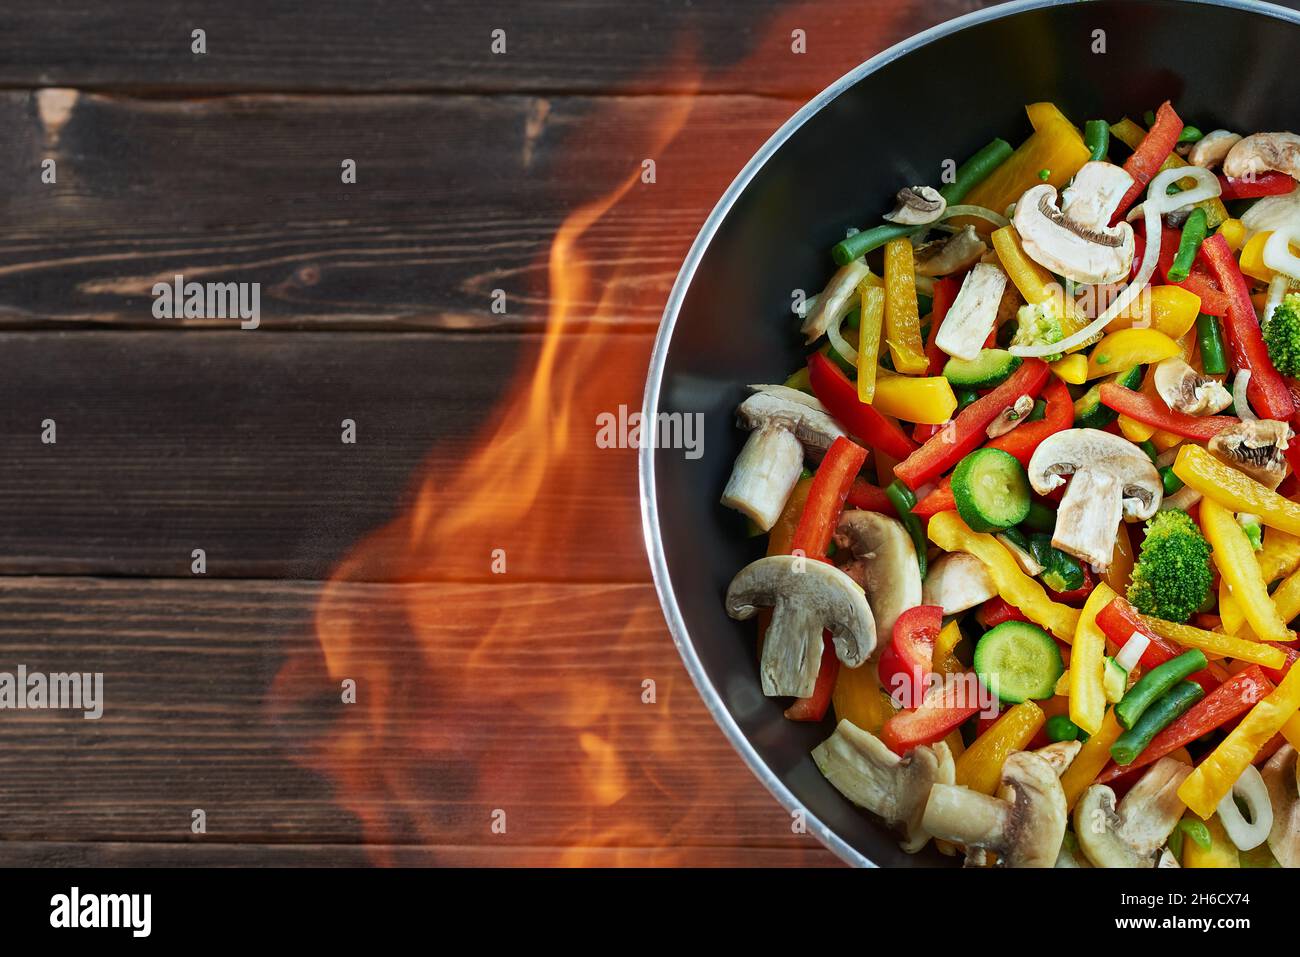 Poêle wok avec légumes sur fond de bois, vue de dessus.Wok de légumes - poivrons, oignons, petits pois, champignons, haricots,brocoli, courgettes.Cuisine asiatique.Menton Banque D'Images